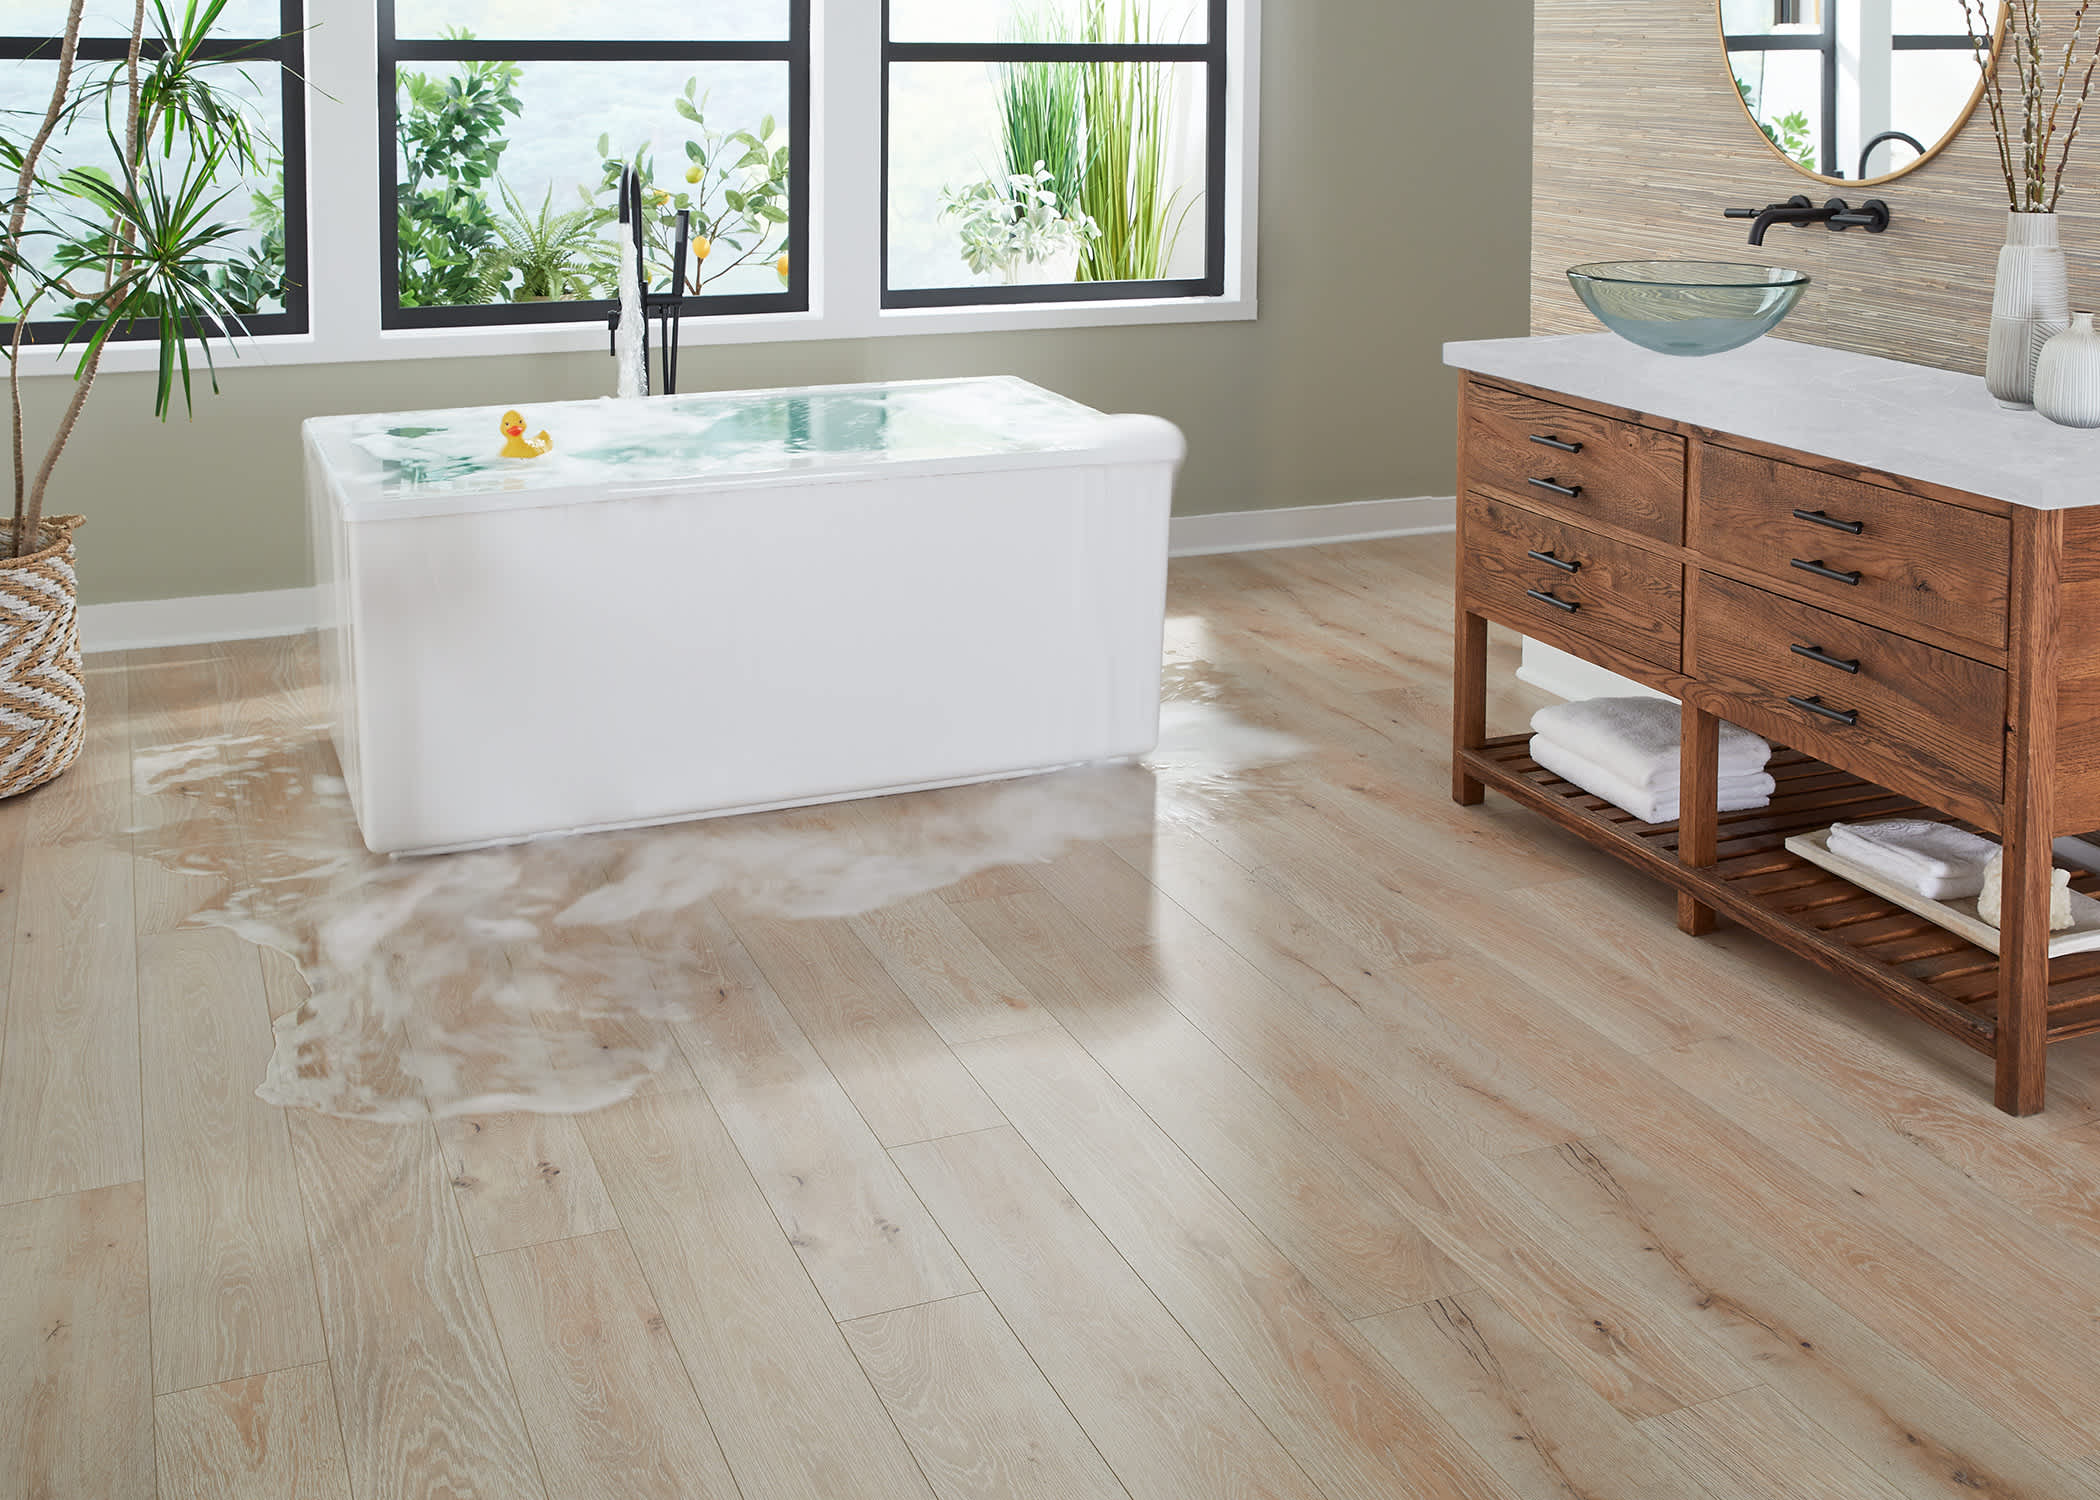 Blonde waterproof rigid vinyl plank floor in bathroom with water overflowing from freestanding tub and vessel sink